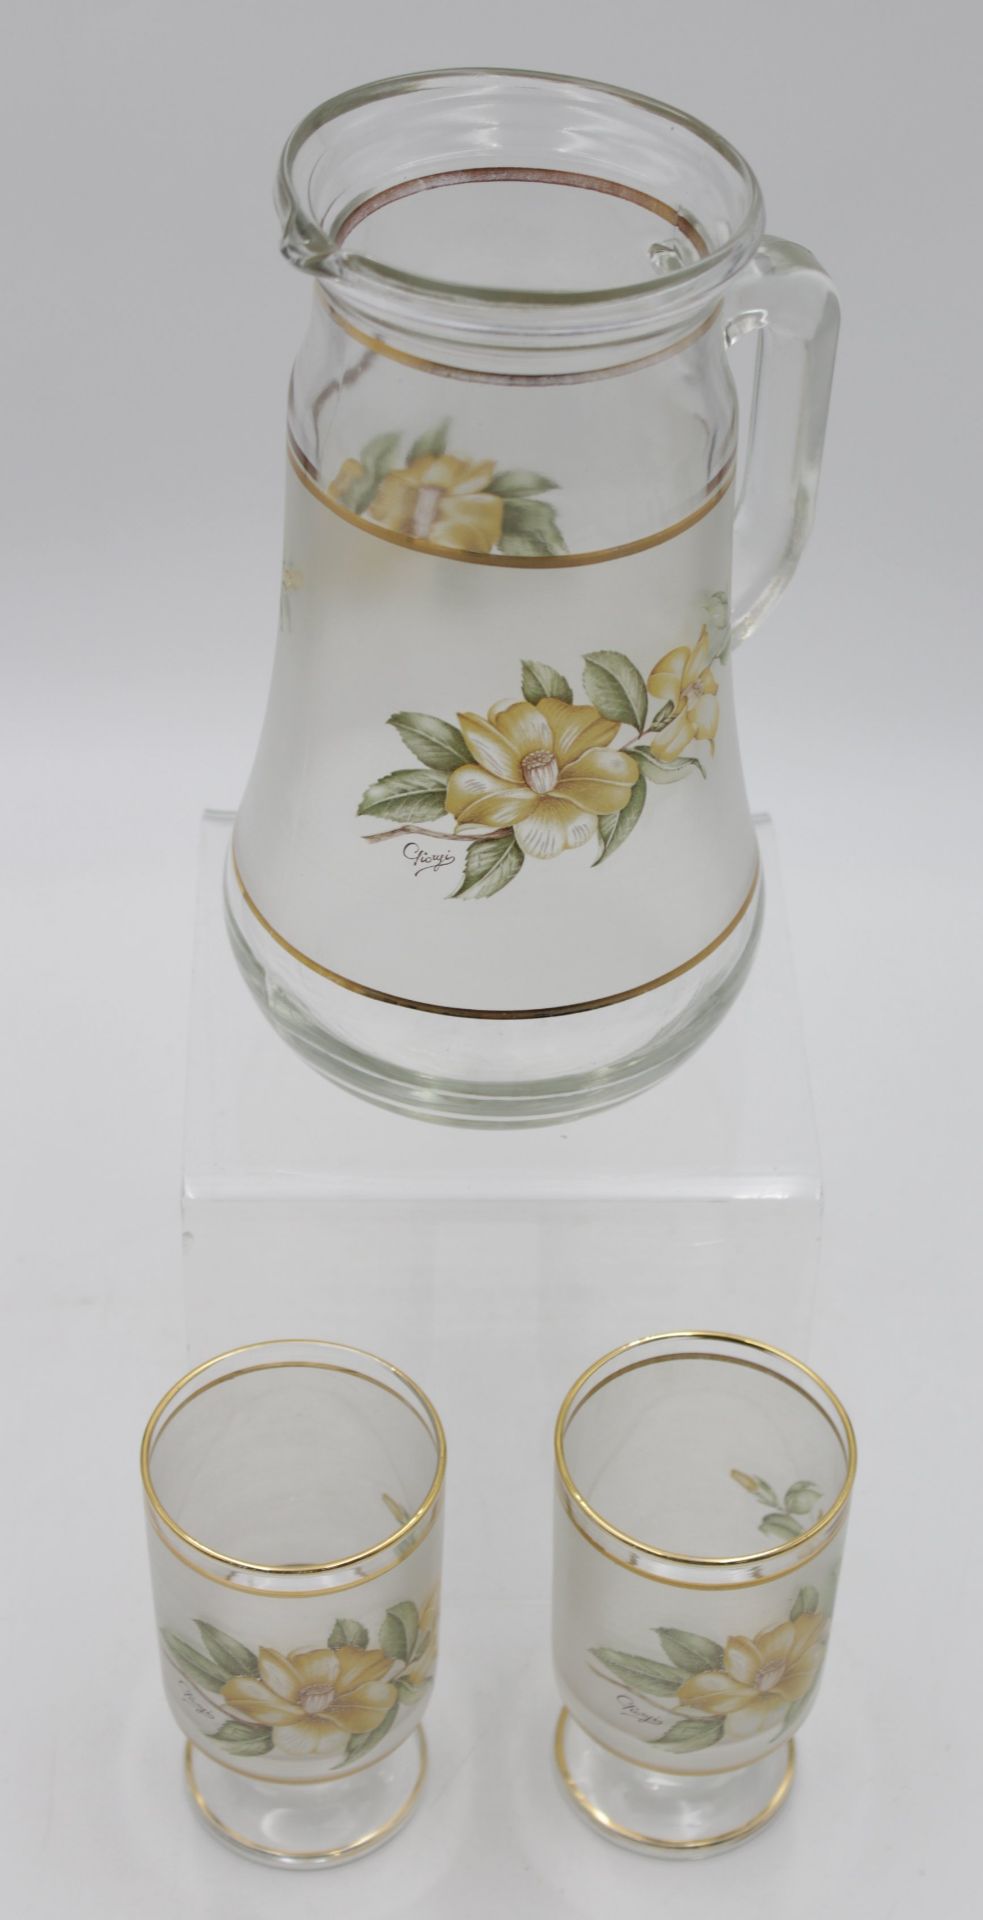 Wasserkrug mit 2 Gläsern, florales Dekor, signiert, Krug H-22cm Gläser H-12,2cm. - Bild 4 aus 4